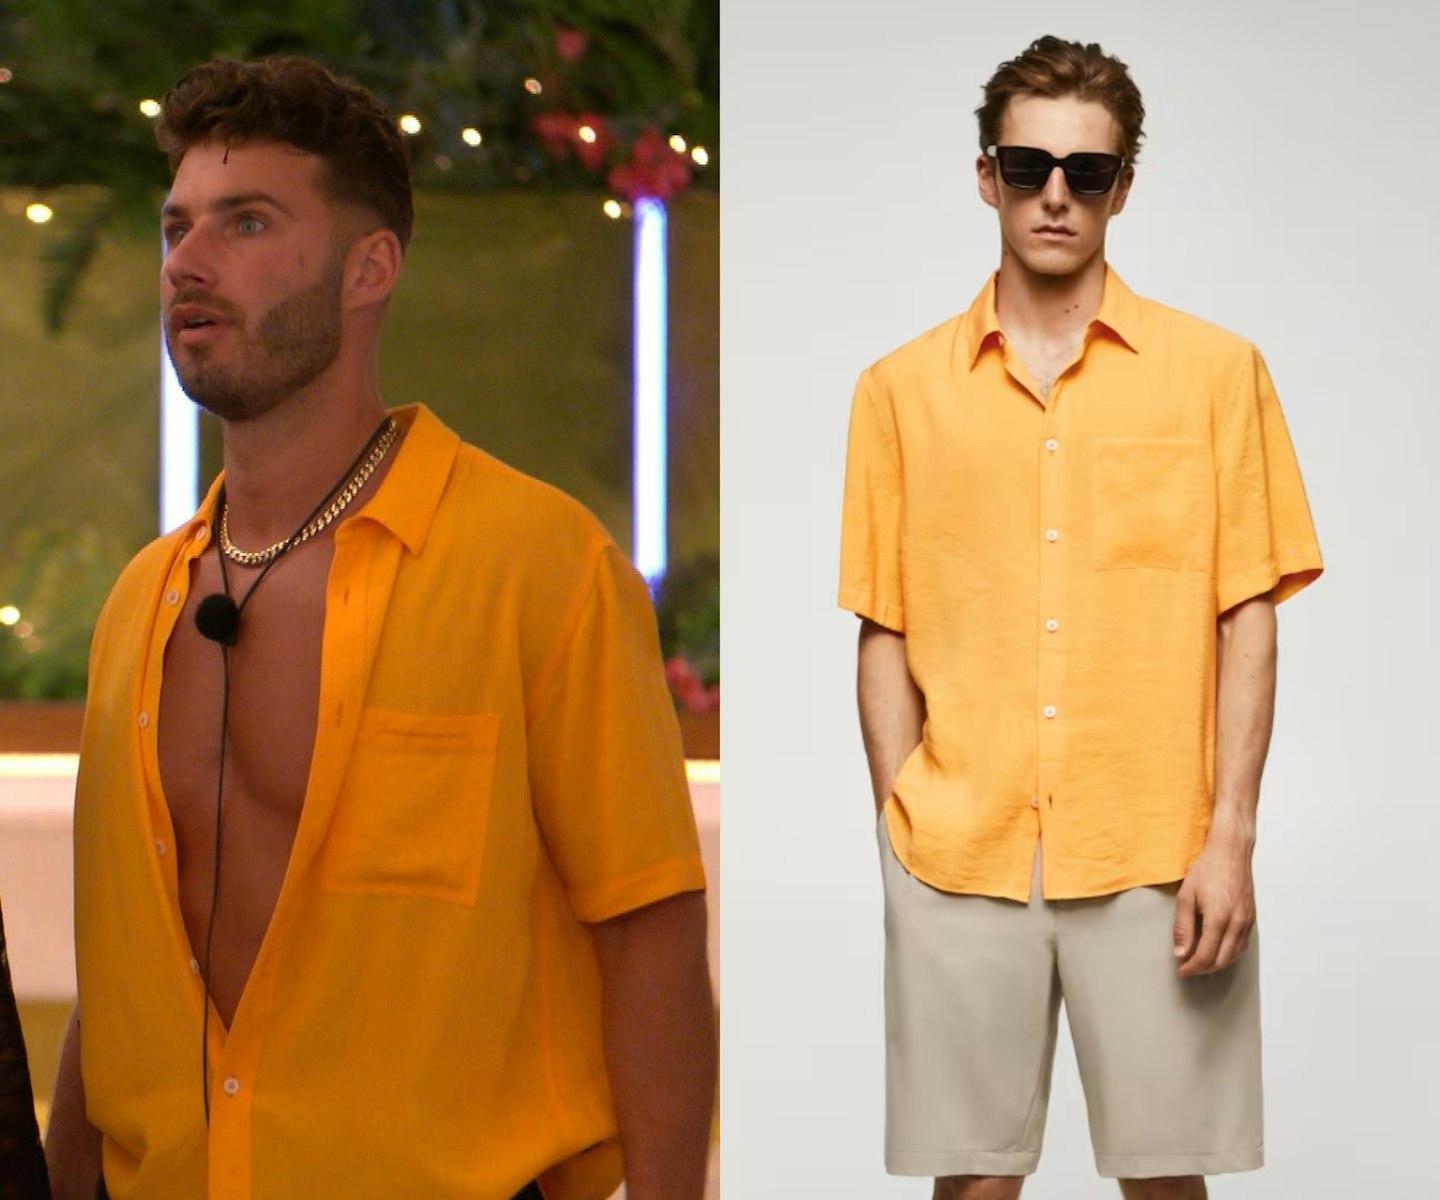 Josh's Yellow Shirt